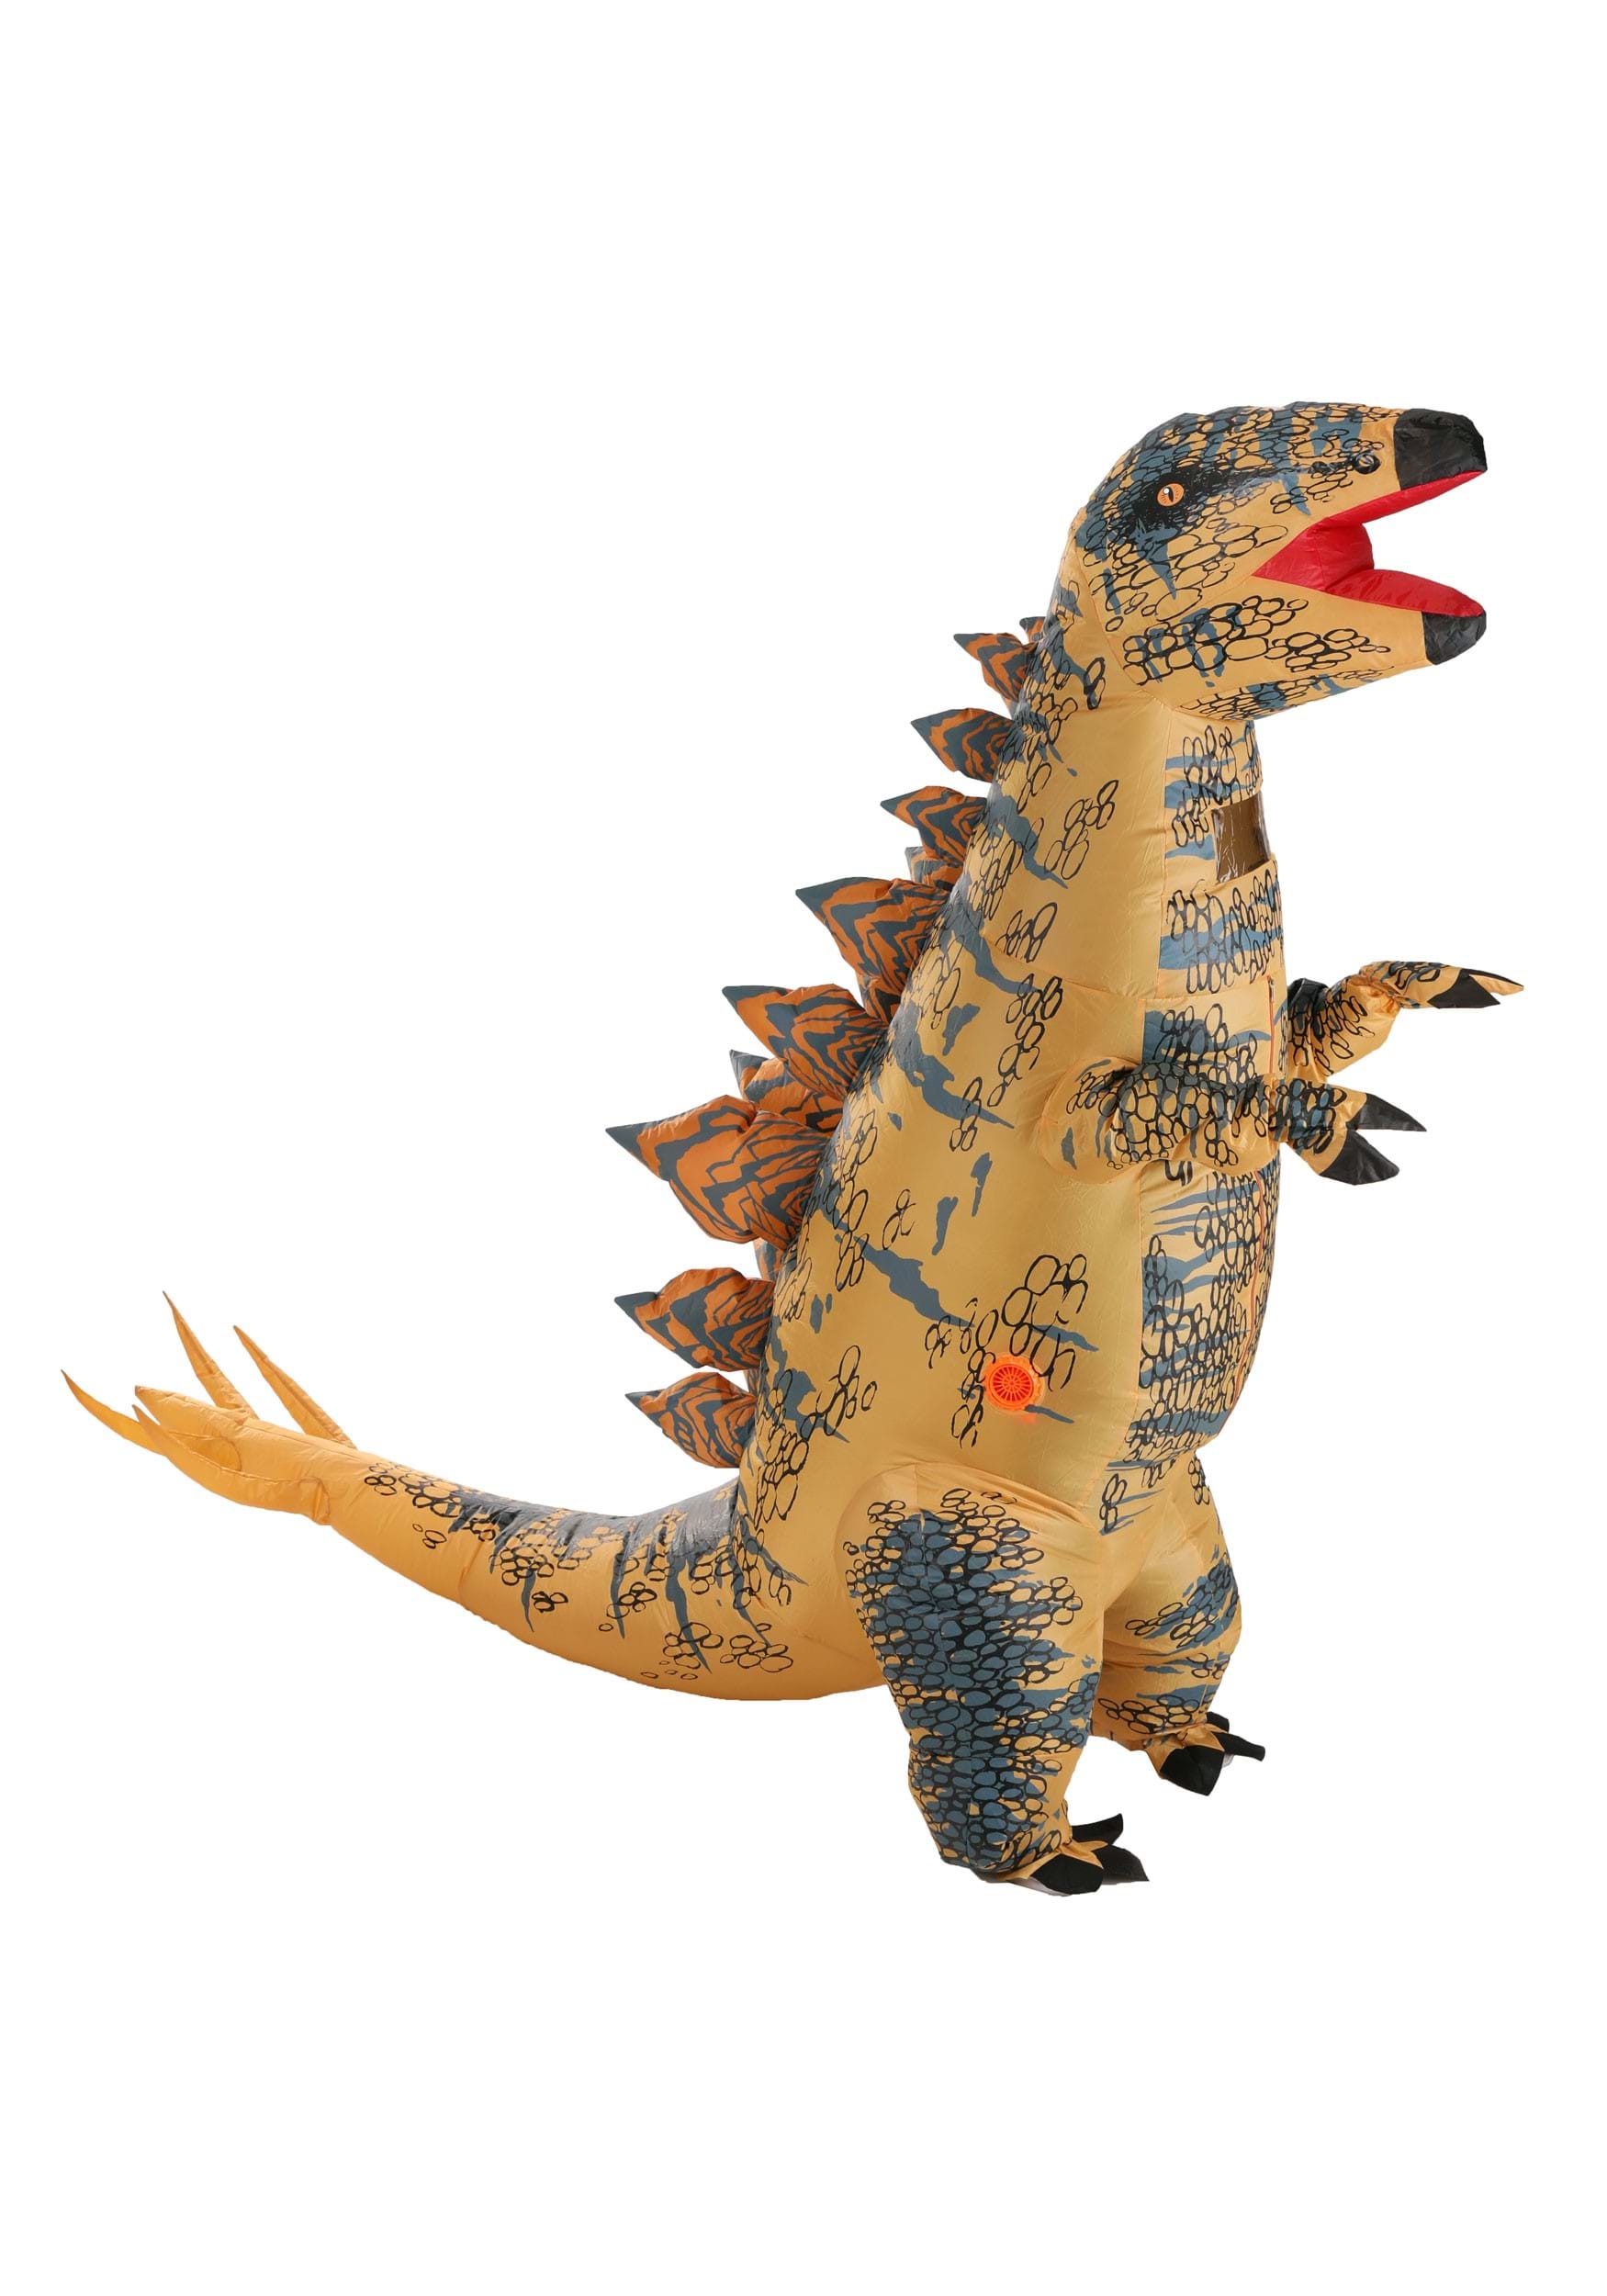 Image of Inflatable Stegosaurus Adult Costume ID FUN5195-ST